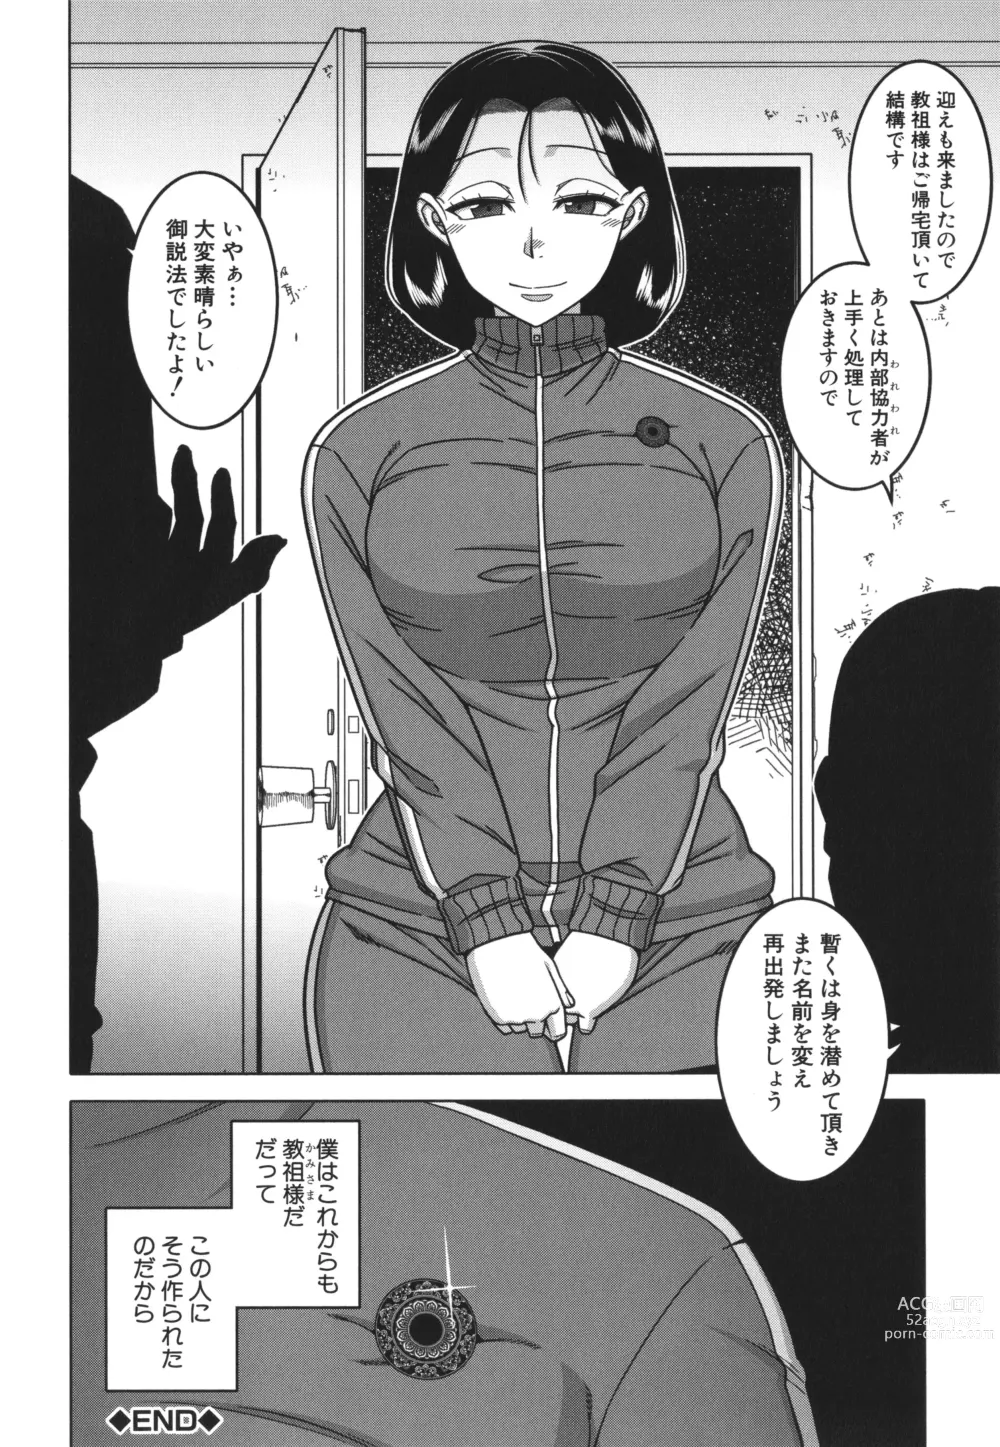 Page 213 of manga Kami-sama no Tsukurikata